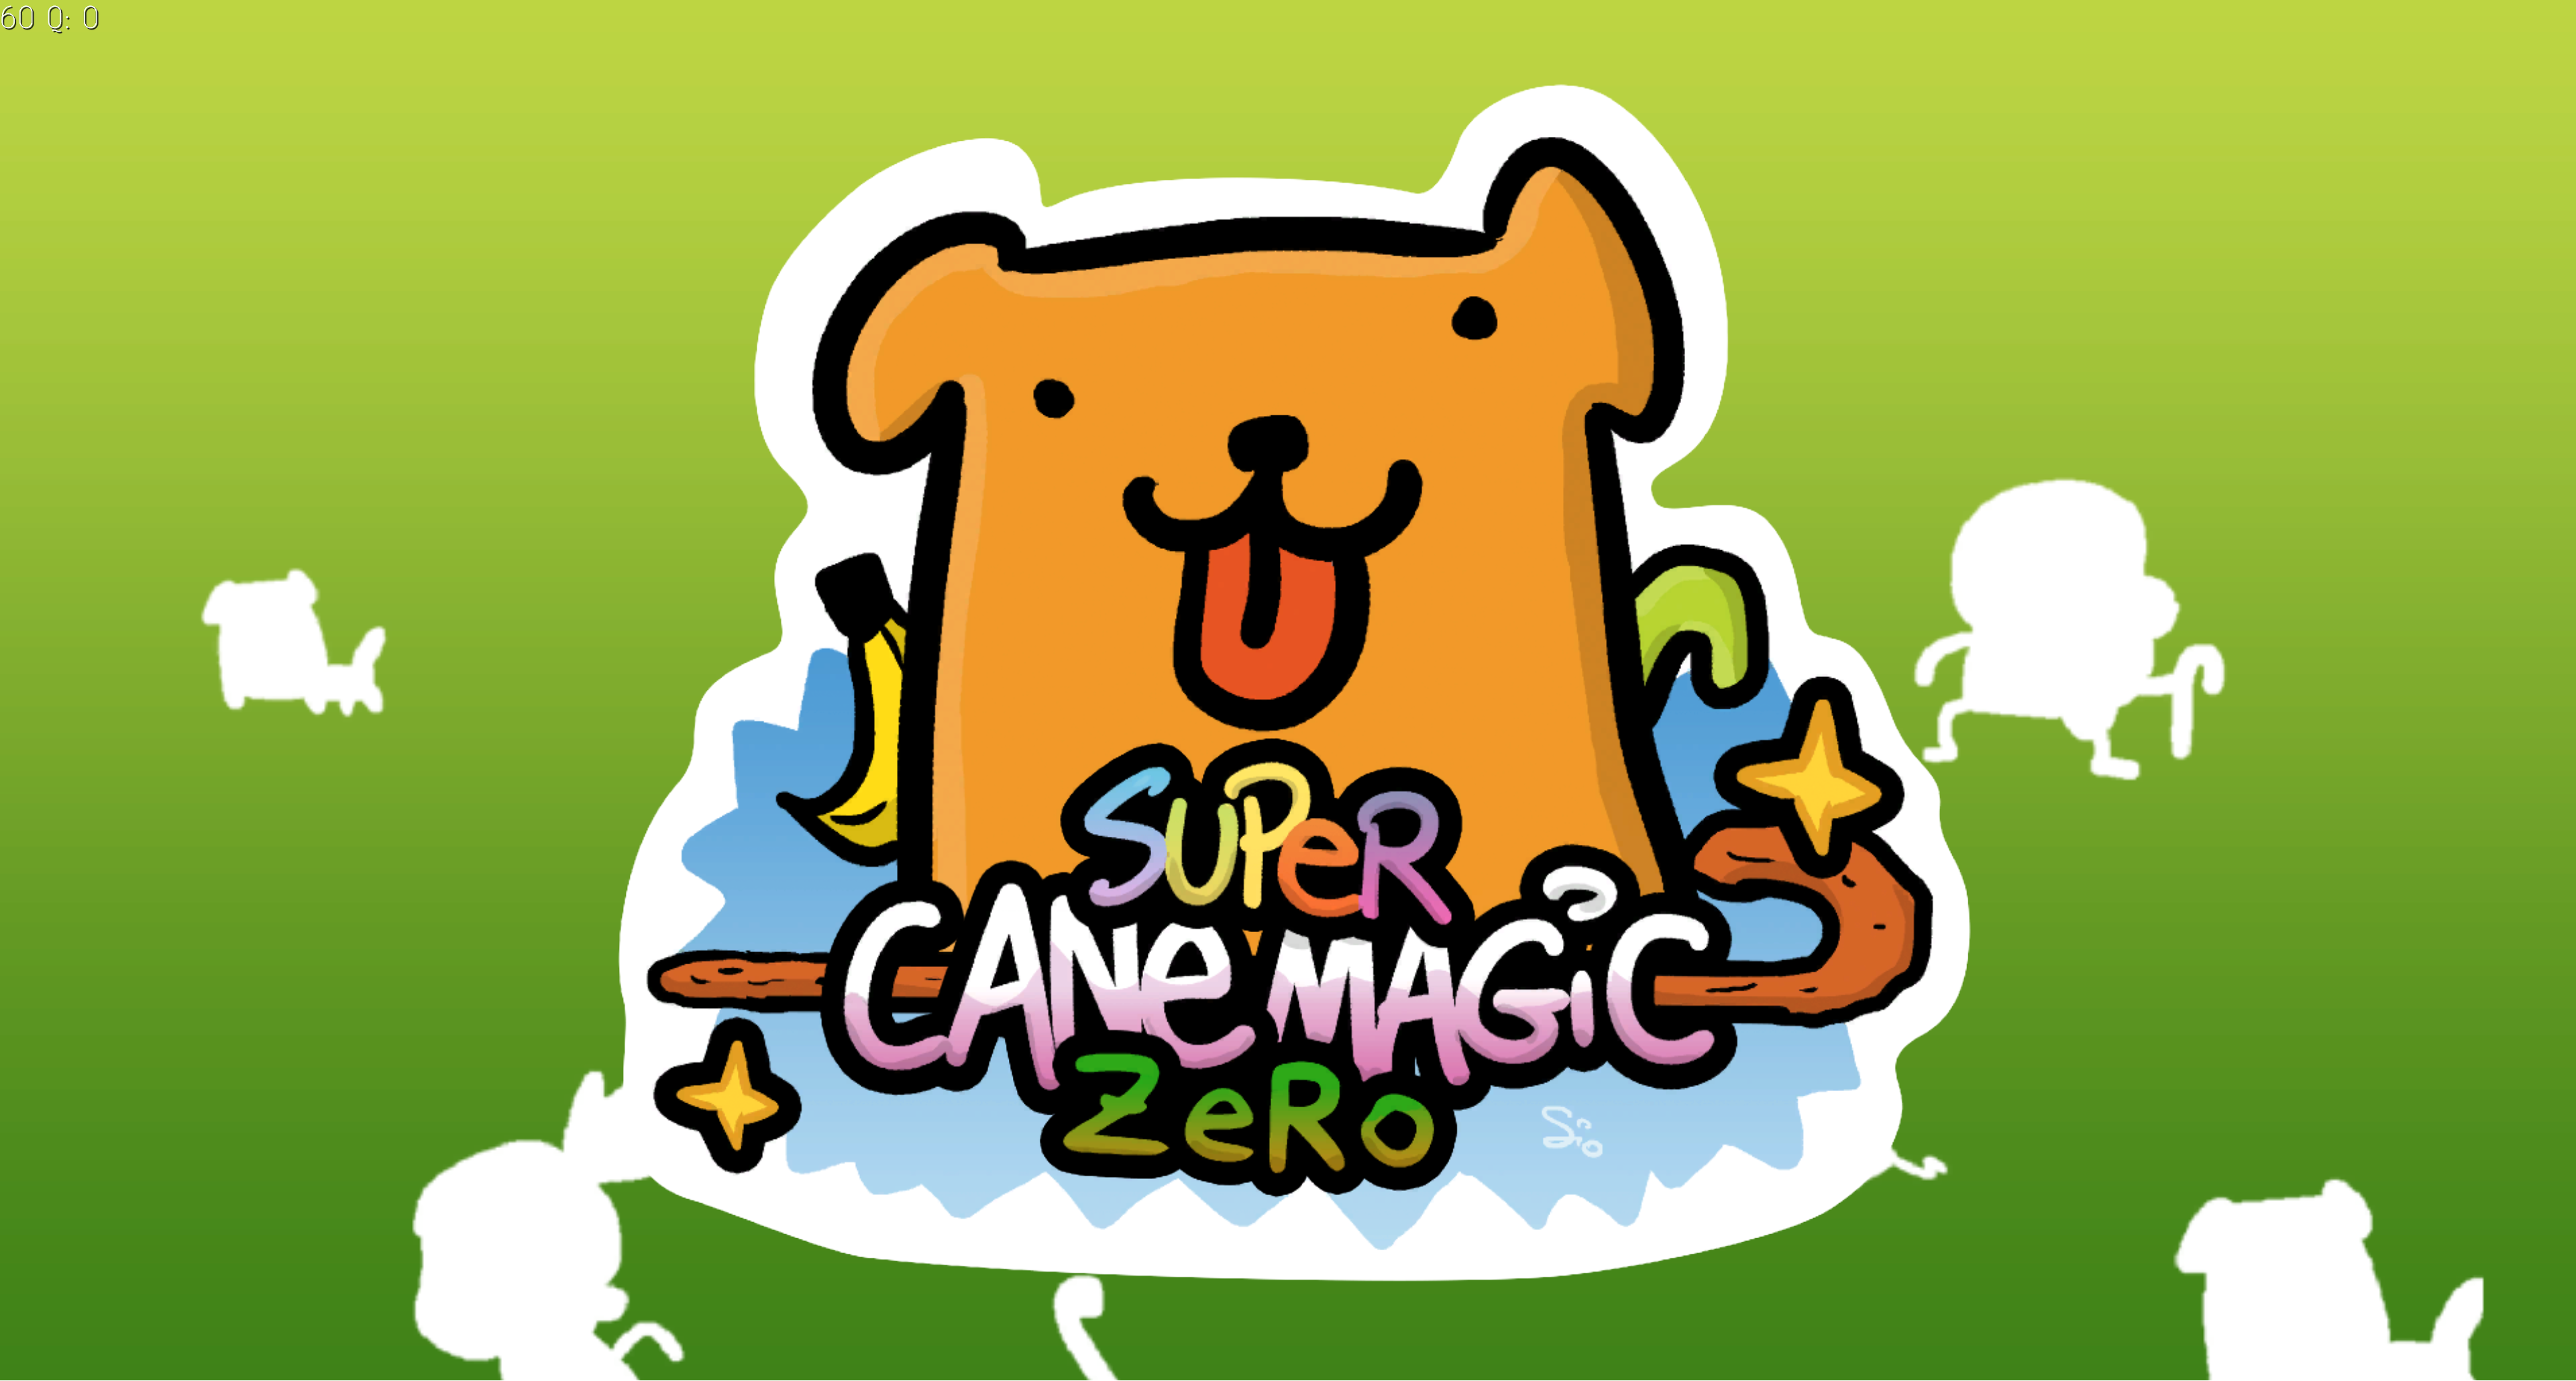 super cane magic zero